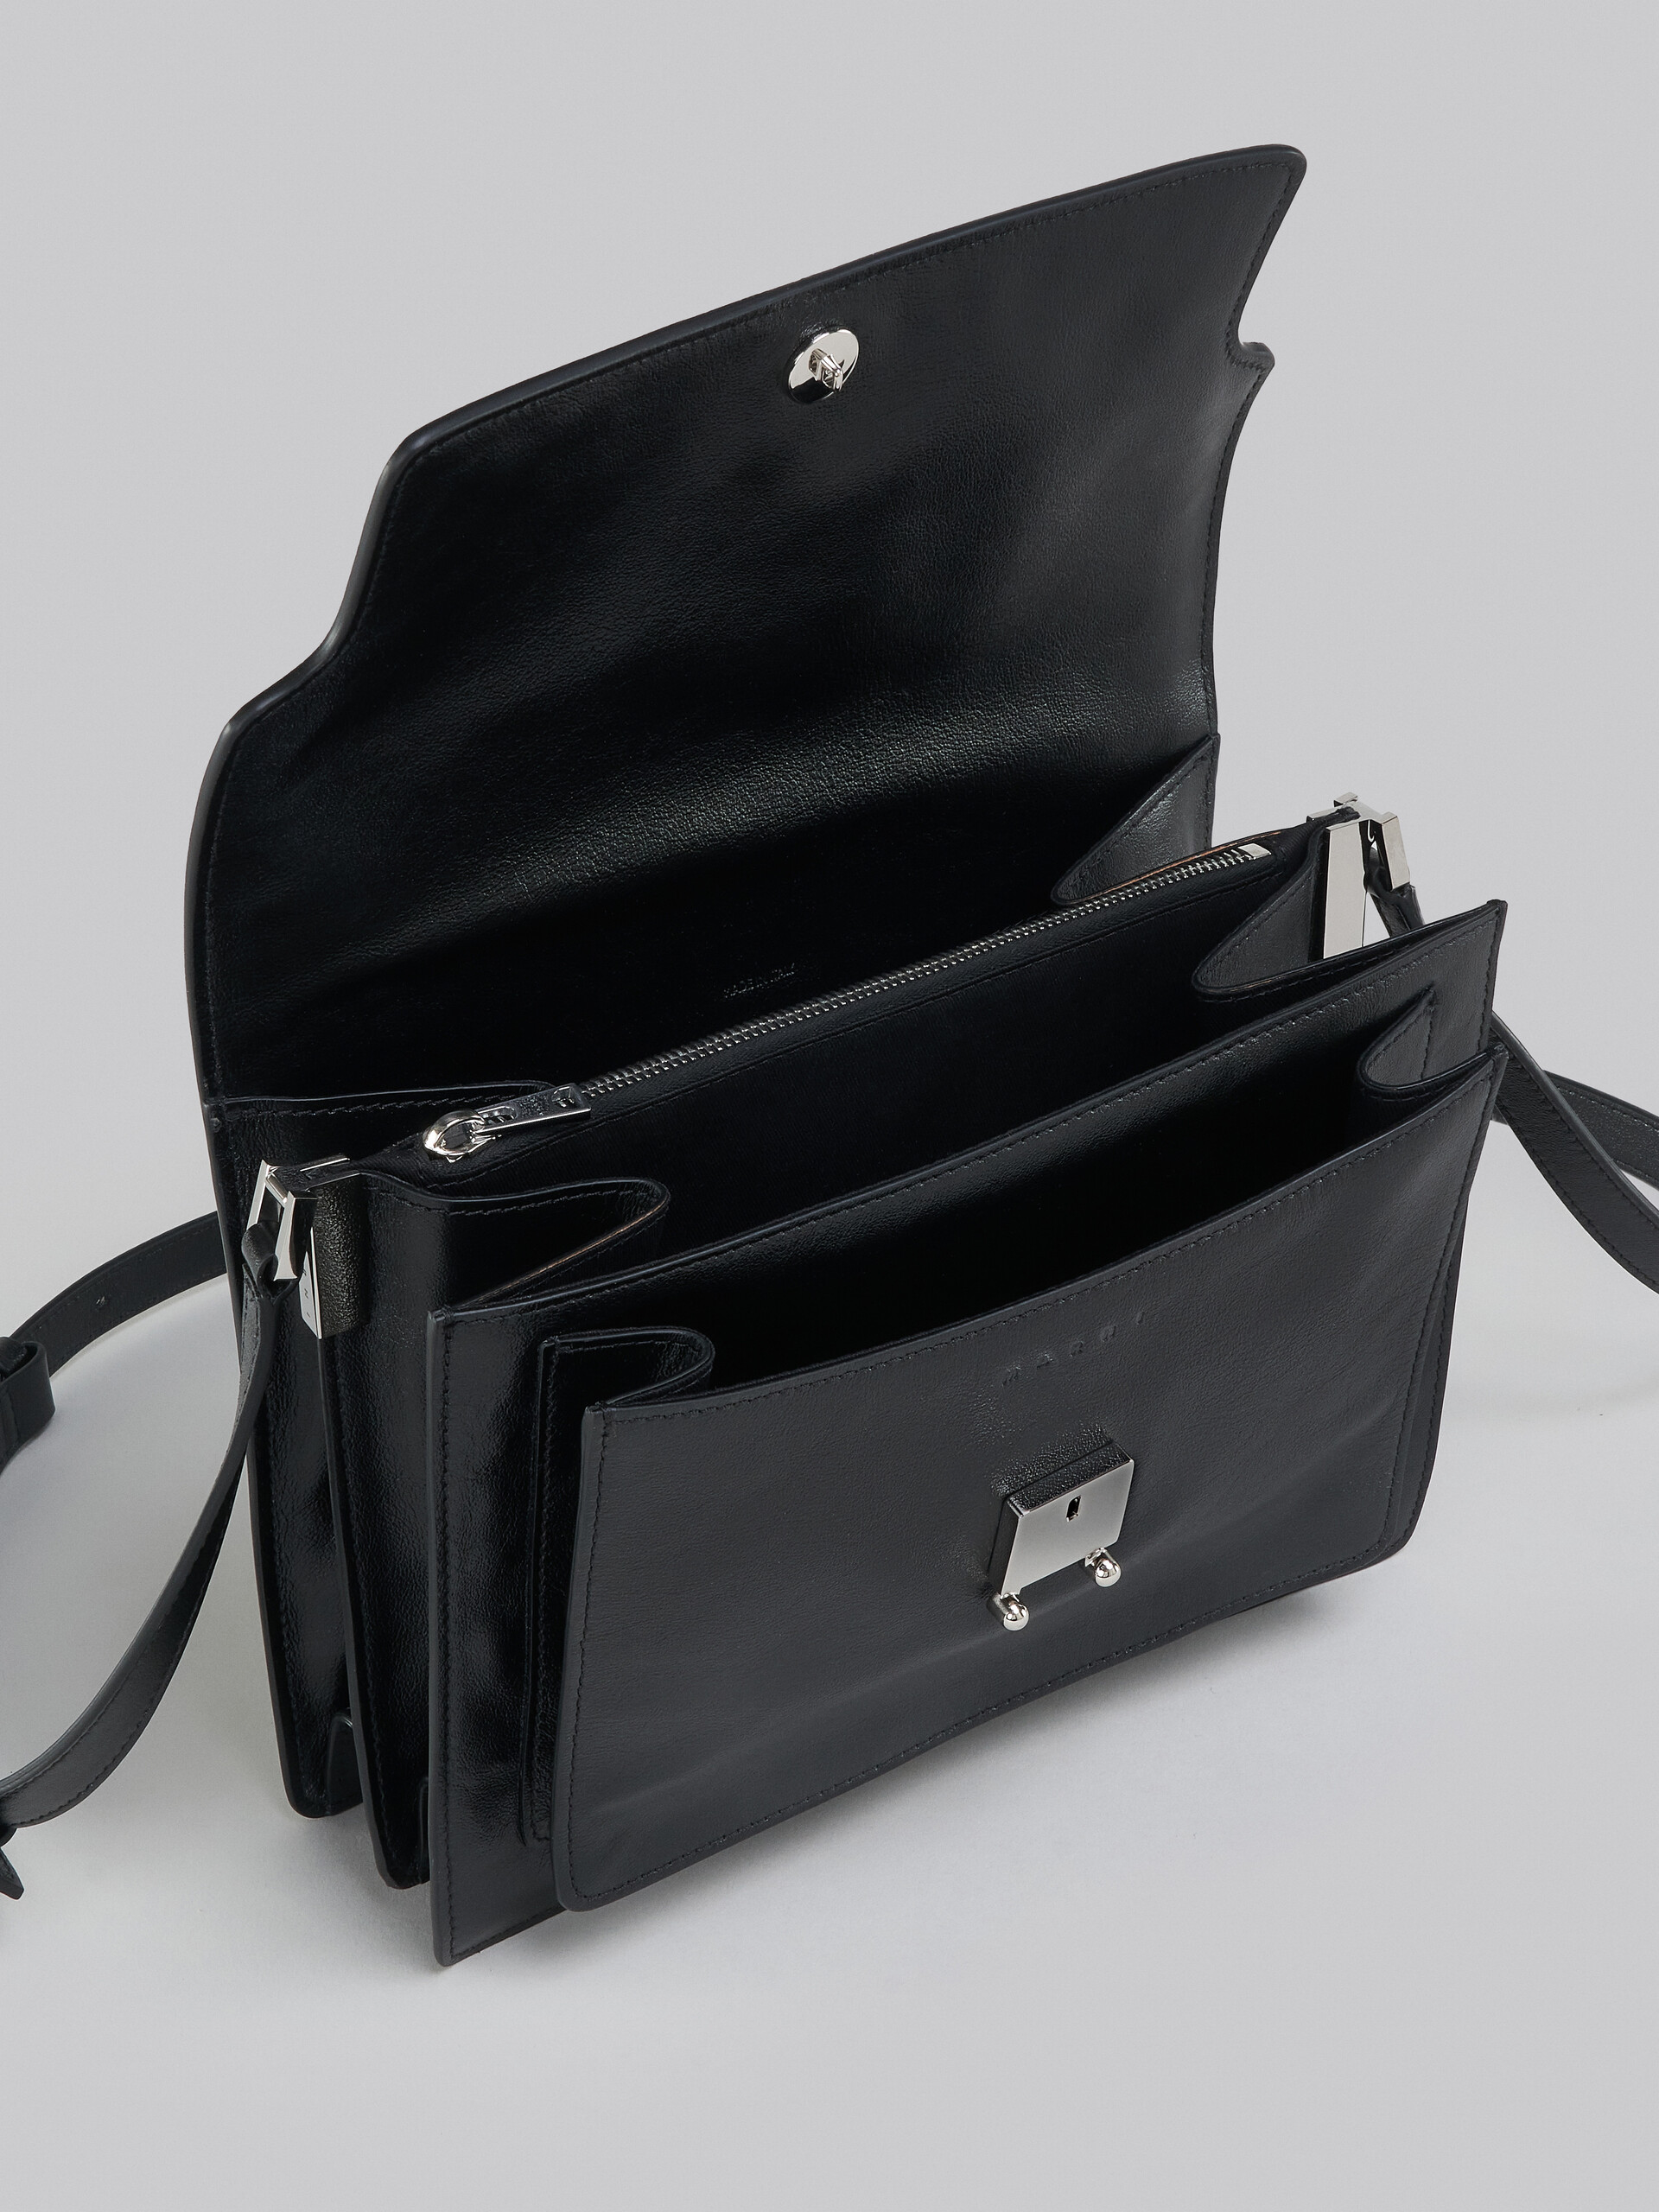 Marni Trunk Soft EW Shoulder Bag in Raw Sienna/Mocha – Hampden